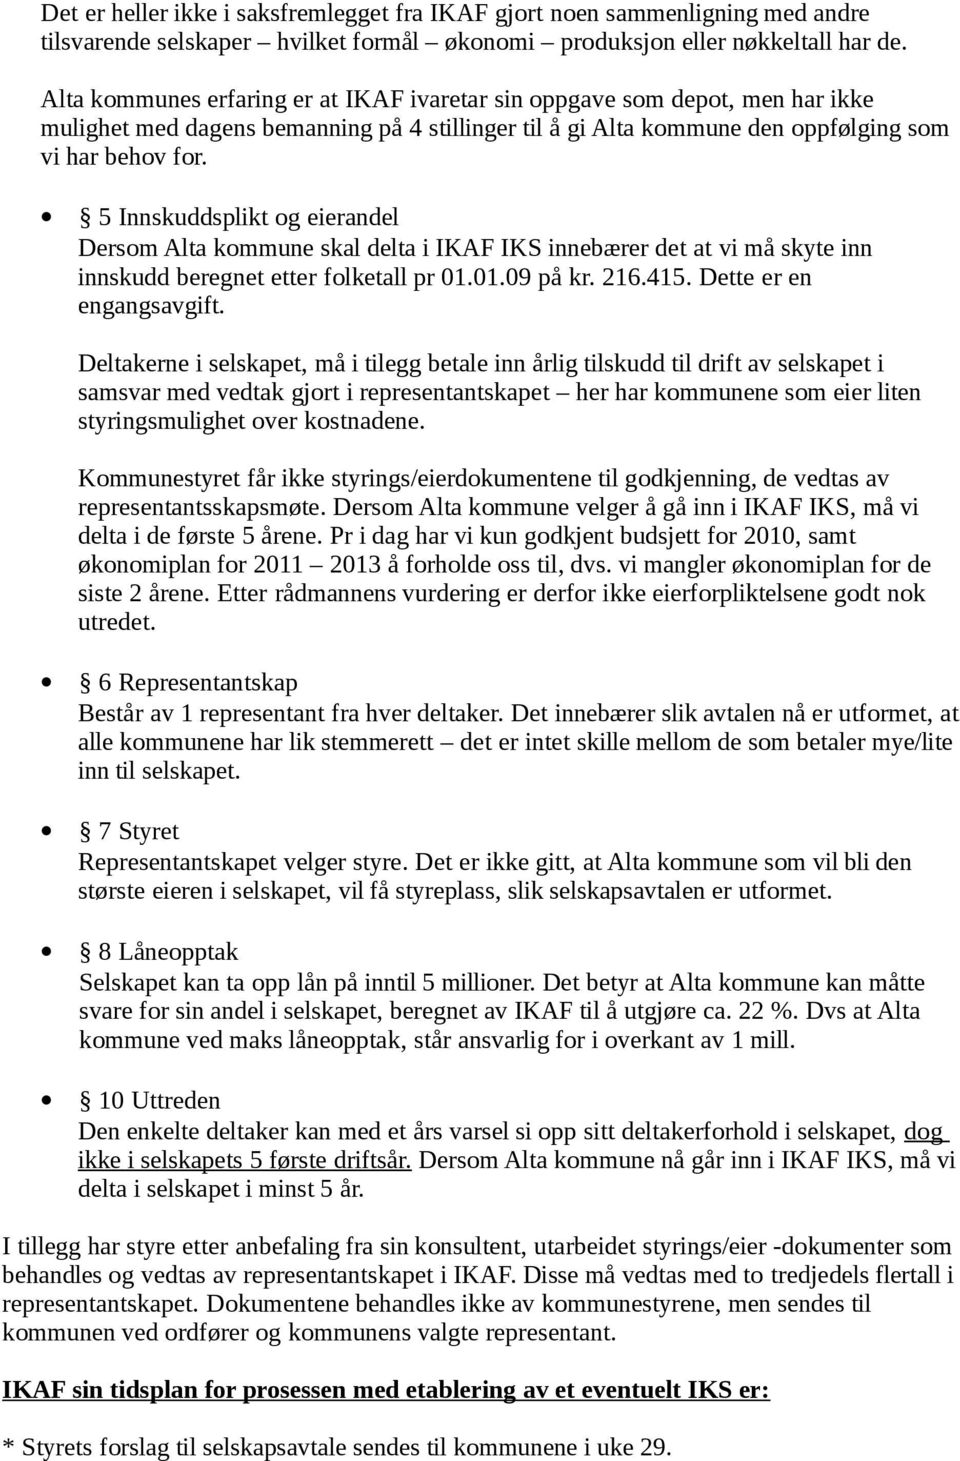 5 Innskuddsplikt og eierandel Dersom Alta kommune skal delta i IKAF IKS innebærer det at vi må skyte inn innskudd beregnet etter folketall pr 01.01.09 på kr. 216.415. Dette er en engangsavgift.